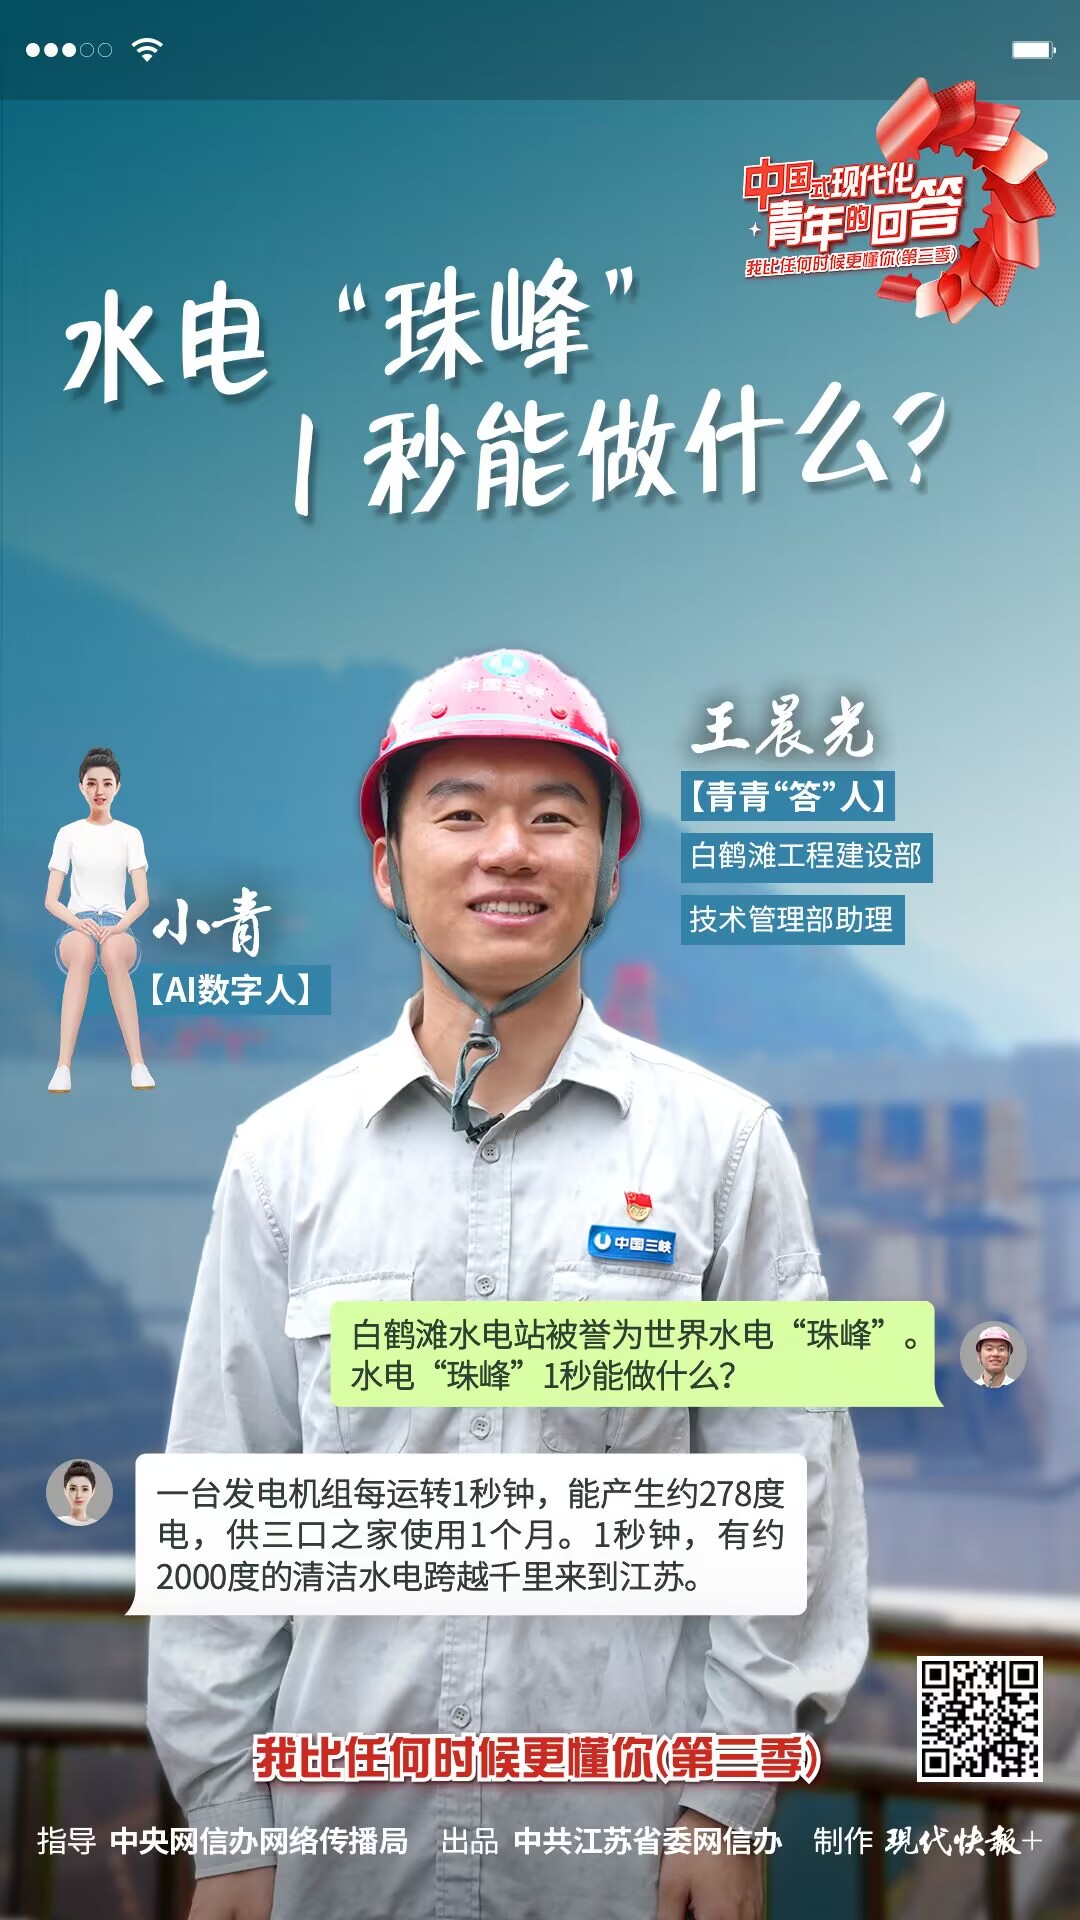 中國式現代化·青年的回答丨水電“珠峰”1秒能做什么？